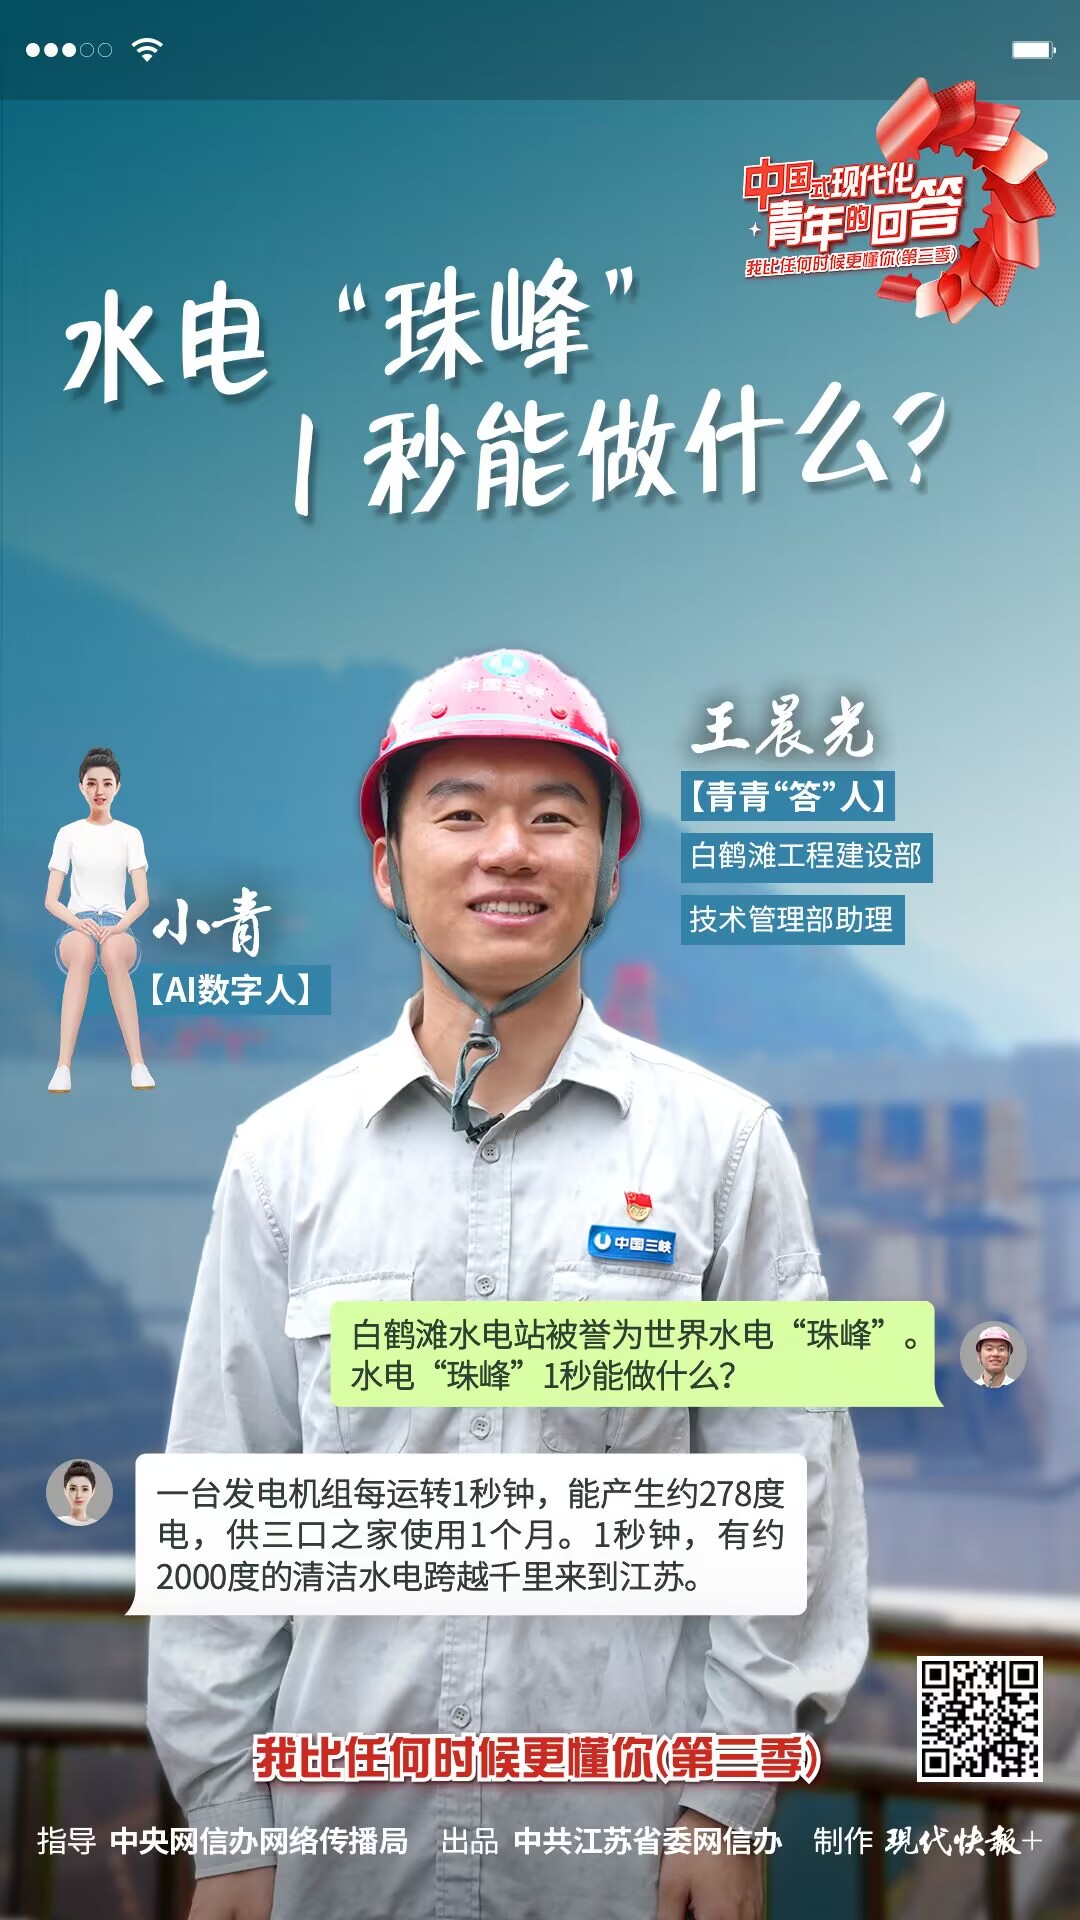 中國式現代化·青年的回答丨水電“珠峰”1秒能做什么？